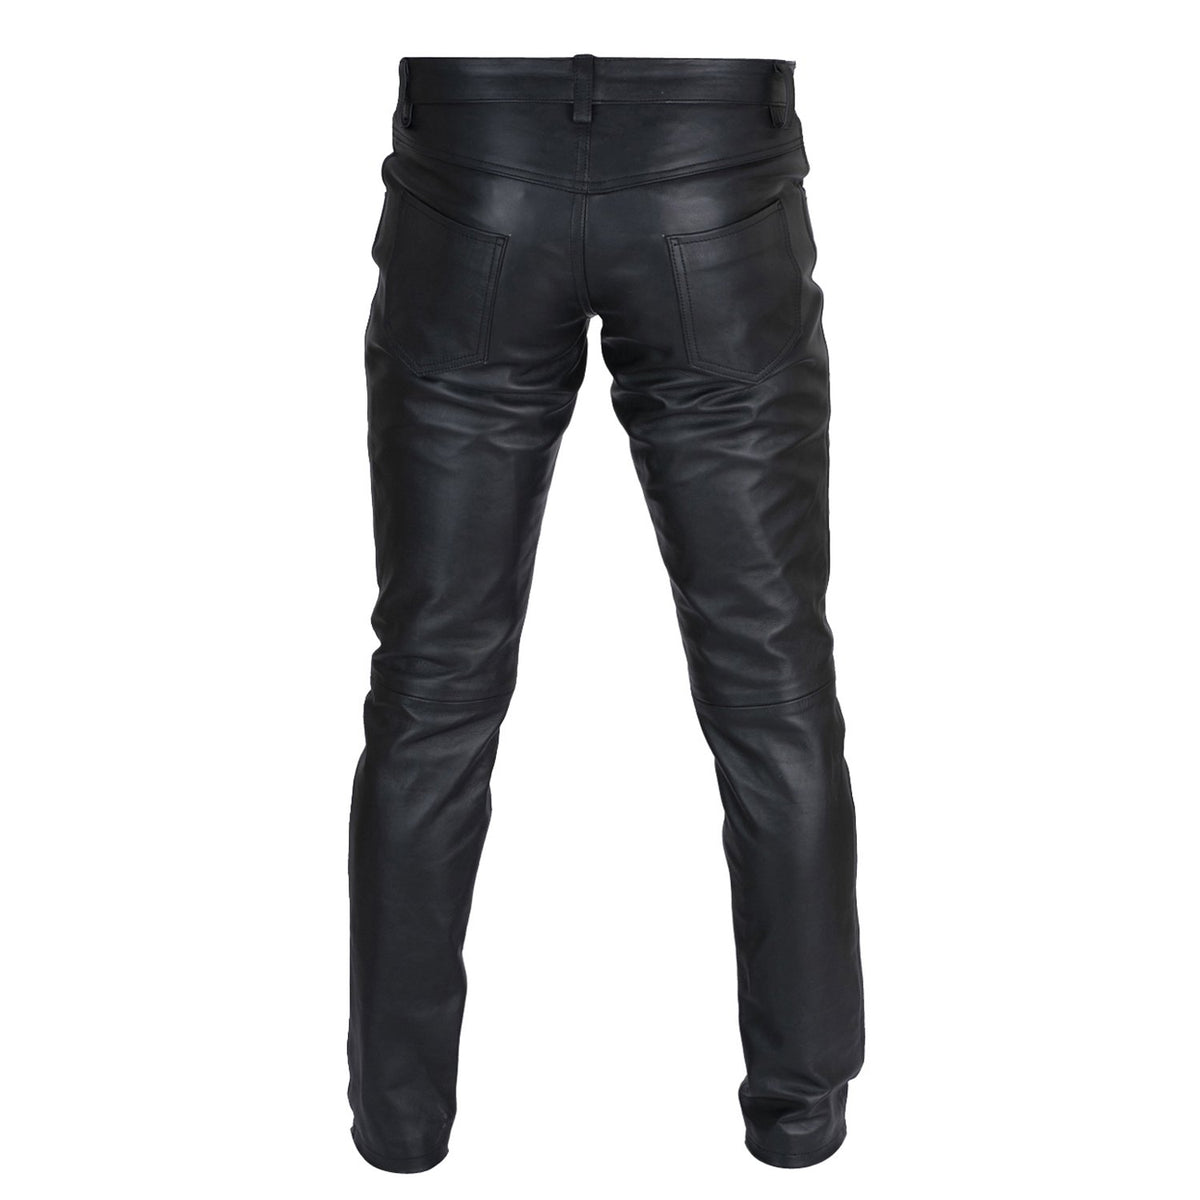 https://leatherskinshop.com/cdn/shop/products/Men-Black-Leather-Pant-Back_1200x.jpg?v=1631758140